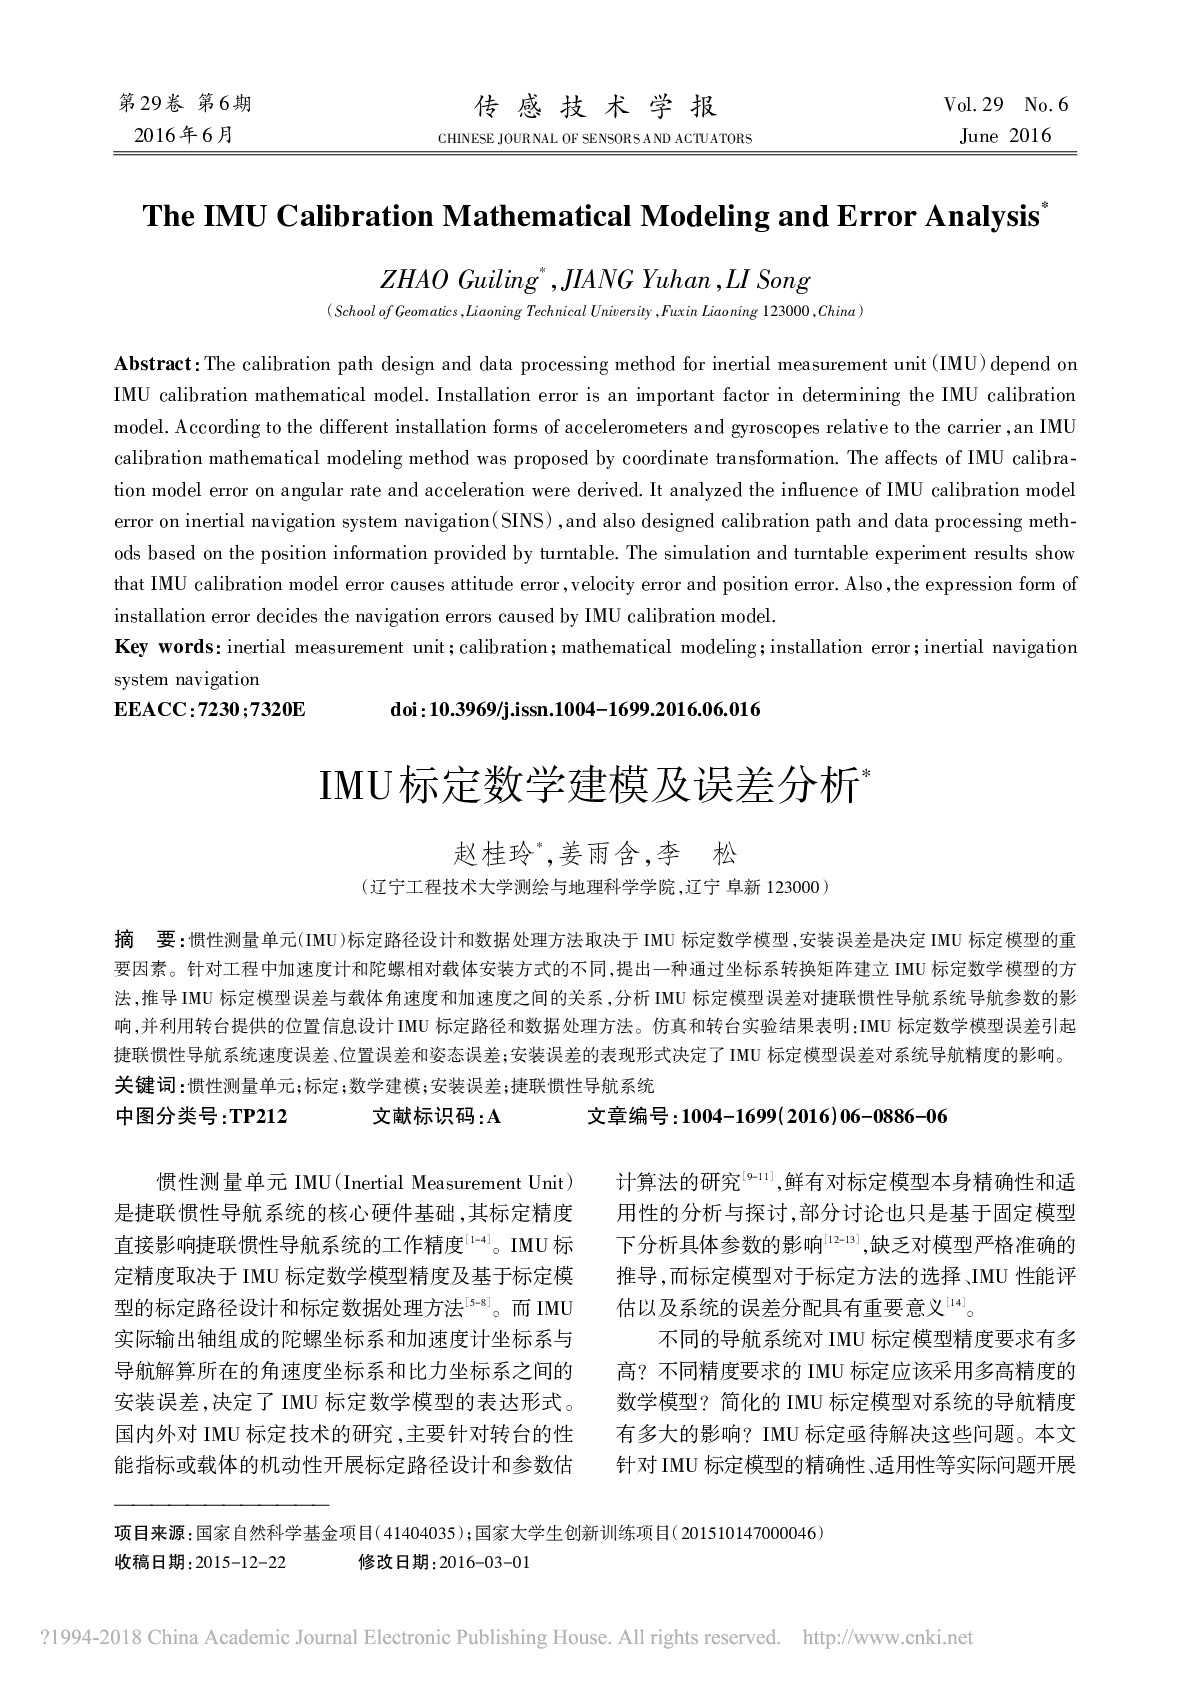 IMU标定数学建模及误差分析_赵桂玲